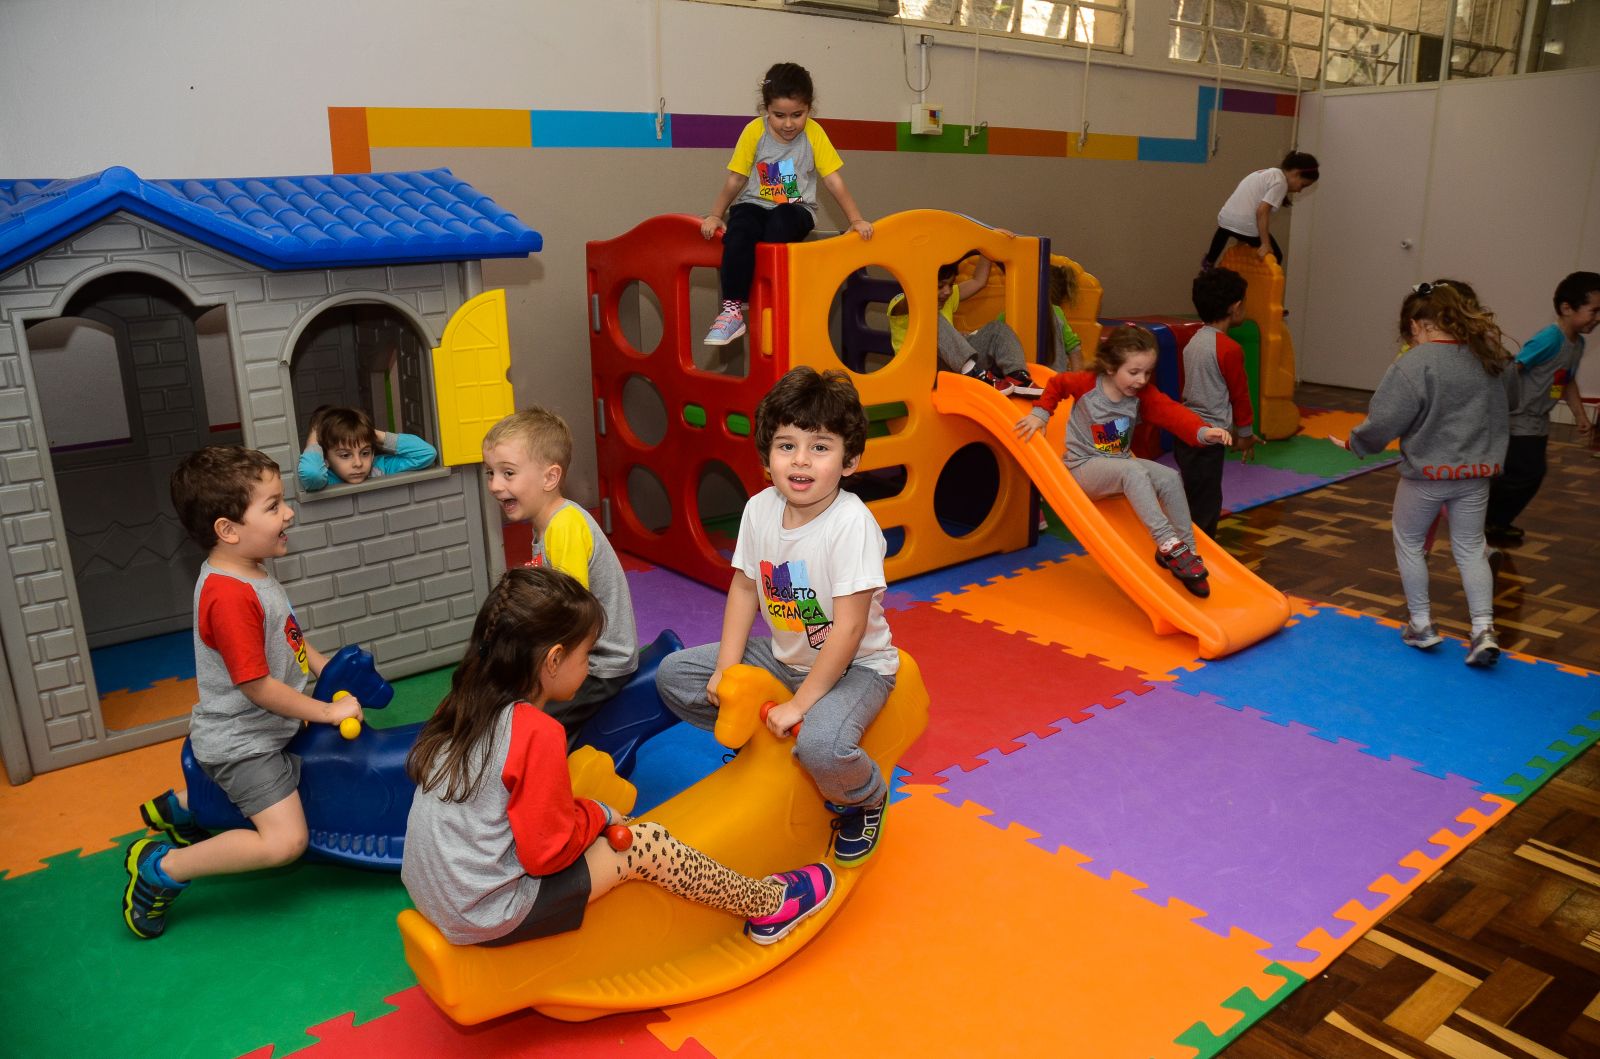 Sogipa: Sogipa libera áreas abertas, como praça infantil e jardins